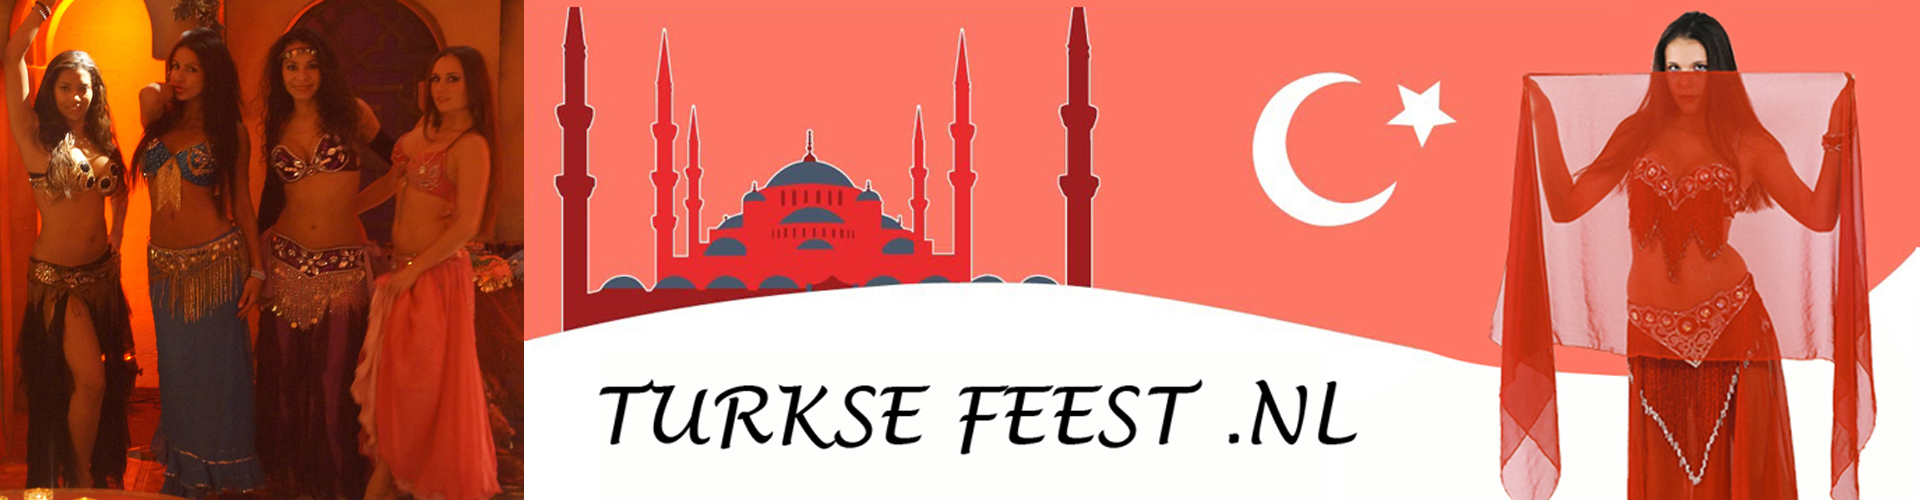 Turks feest